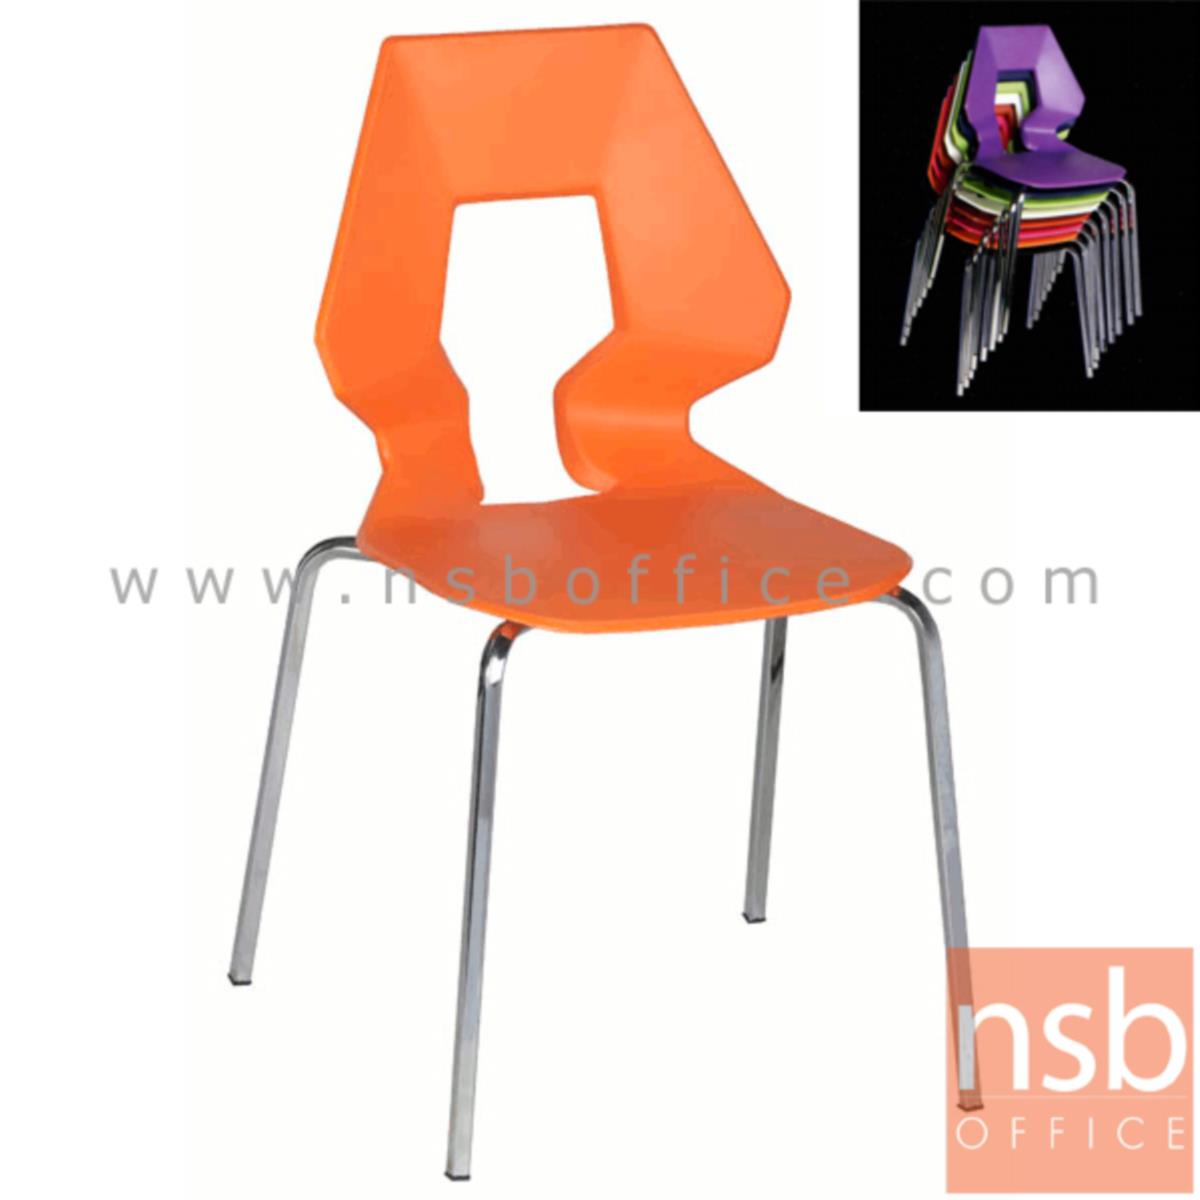 เก้าอี้อเนกประสงค์เฟรมโพลี่ รุ่น B128  ขาเหล็กตันชุบโครเมี่ยม